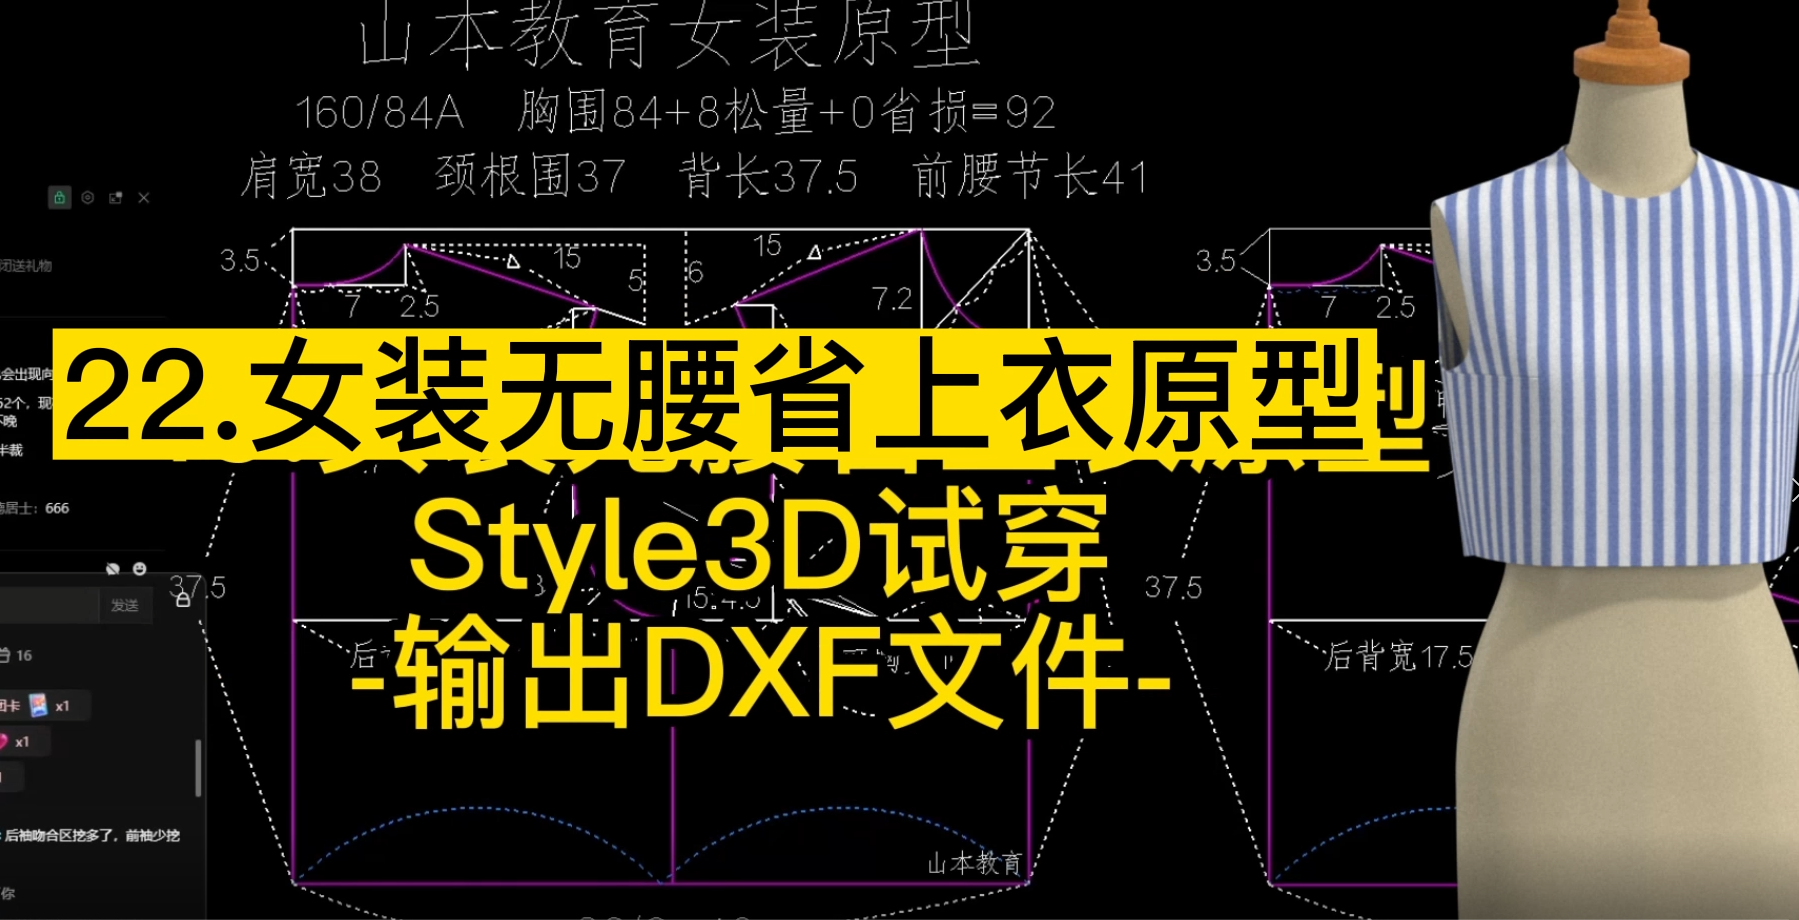 22.女装无腰省上衣原型Style3D试穿-输出DXF文件